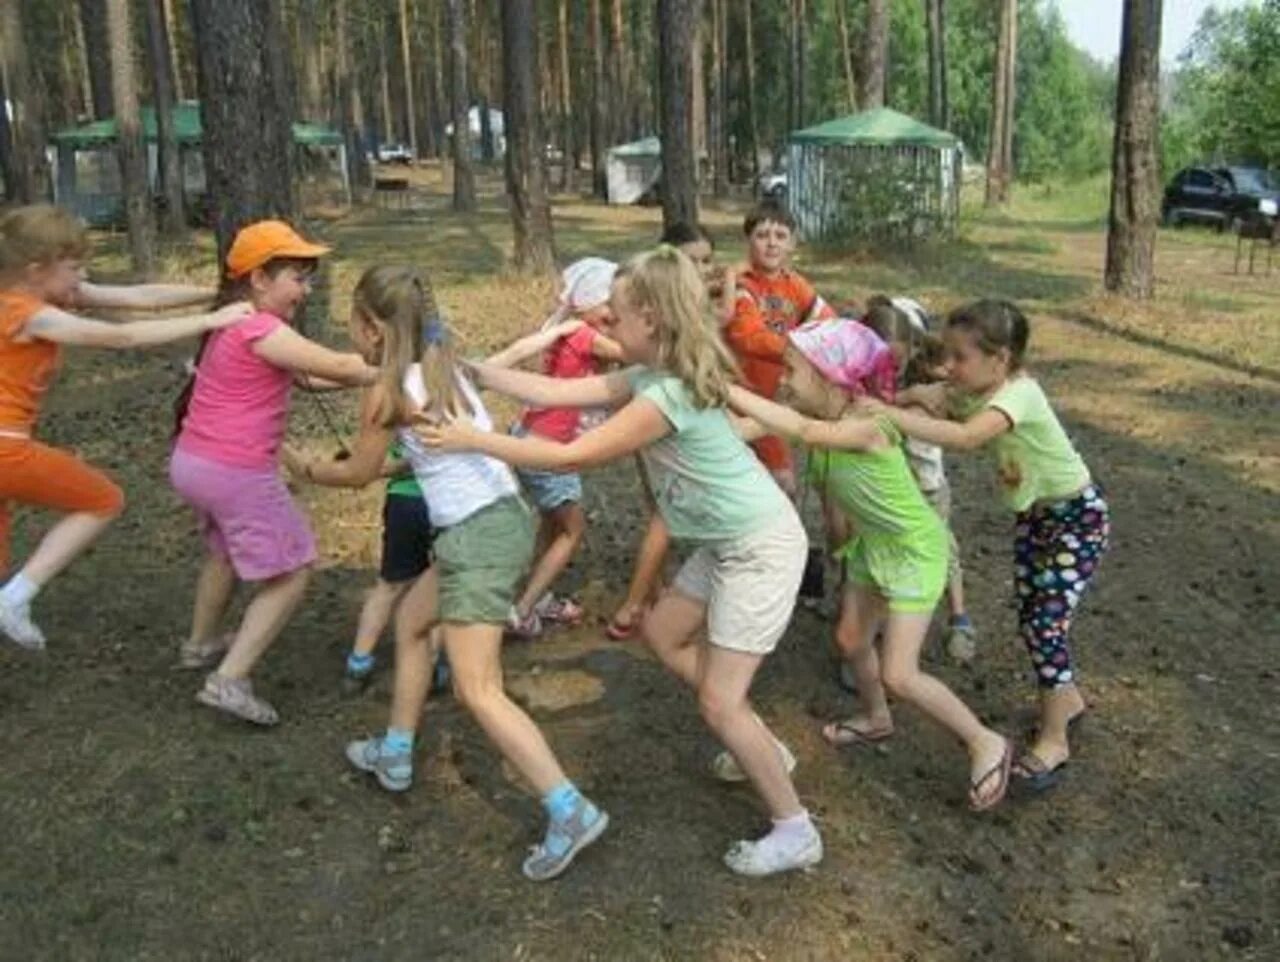 В каком лагере дети из белгорода. Дети в кругу в лагере. Дети сидят в кругу в лагере. Дети на улице летний лагерь. Дети играют в лагере.